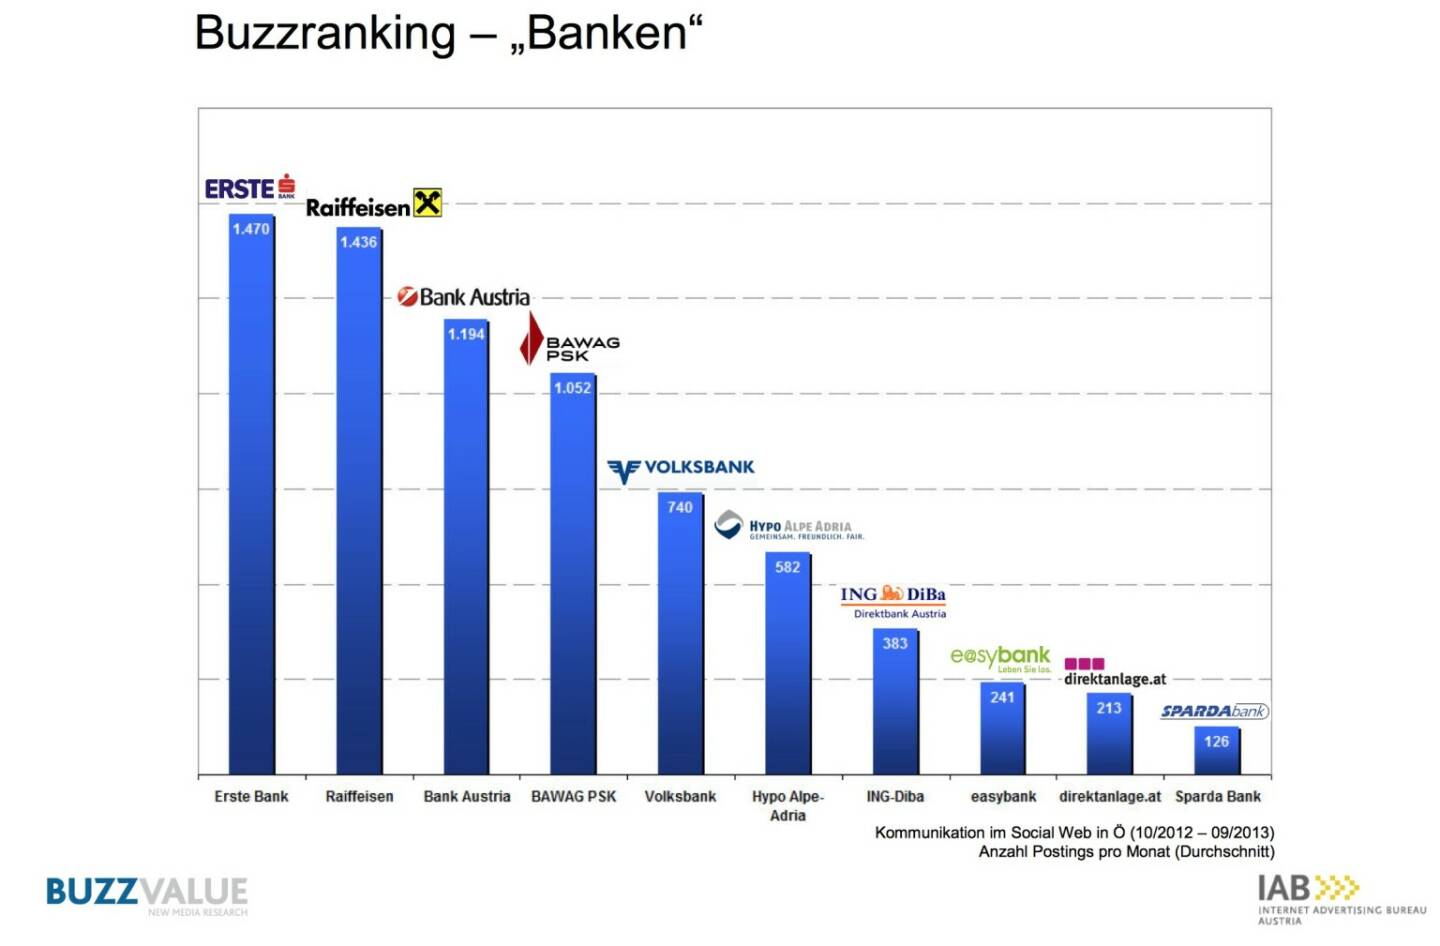 Buzzranking Banken, aus der Studie IAB BrandBuzz Banken- und Finanzdienstleister http://www.iab-austria.at/iab-brand-buzz-banken-finanzdienstleister/